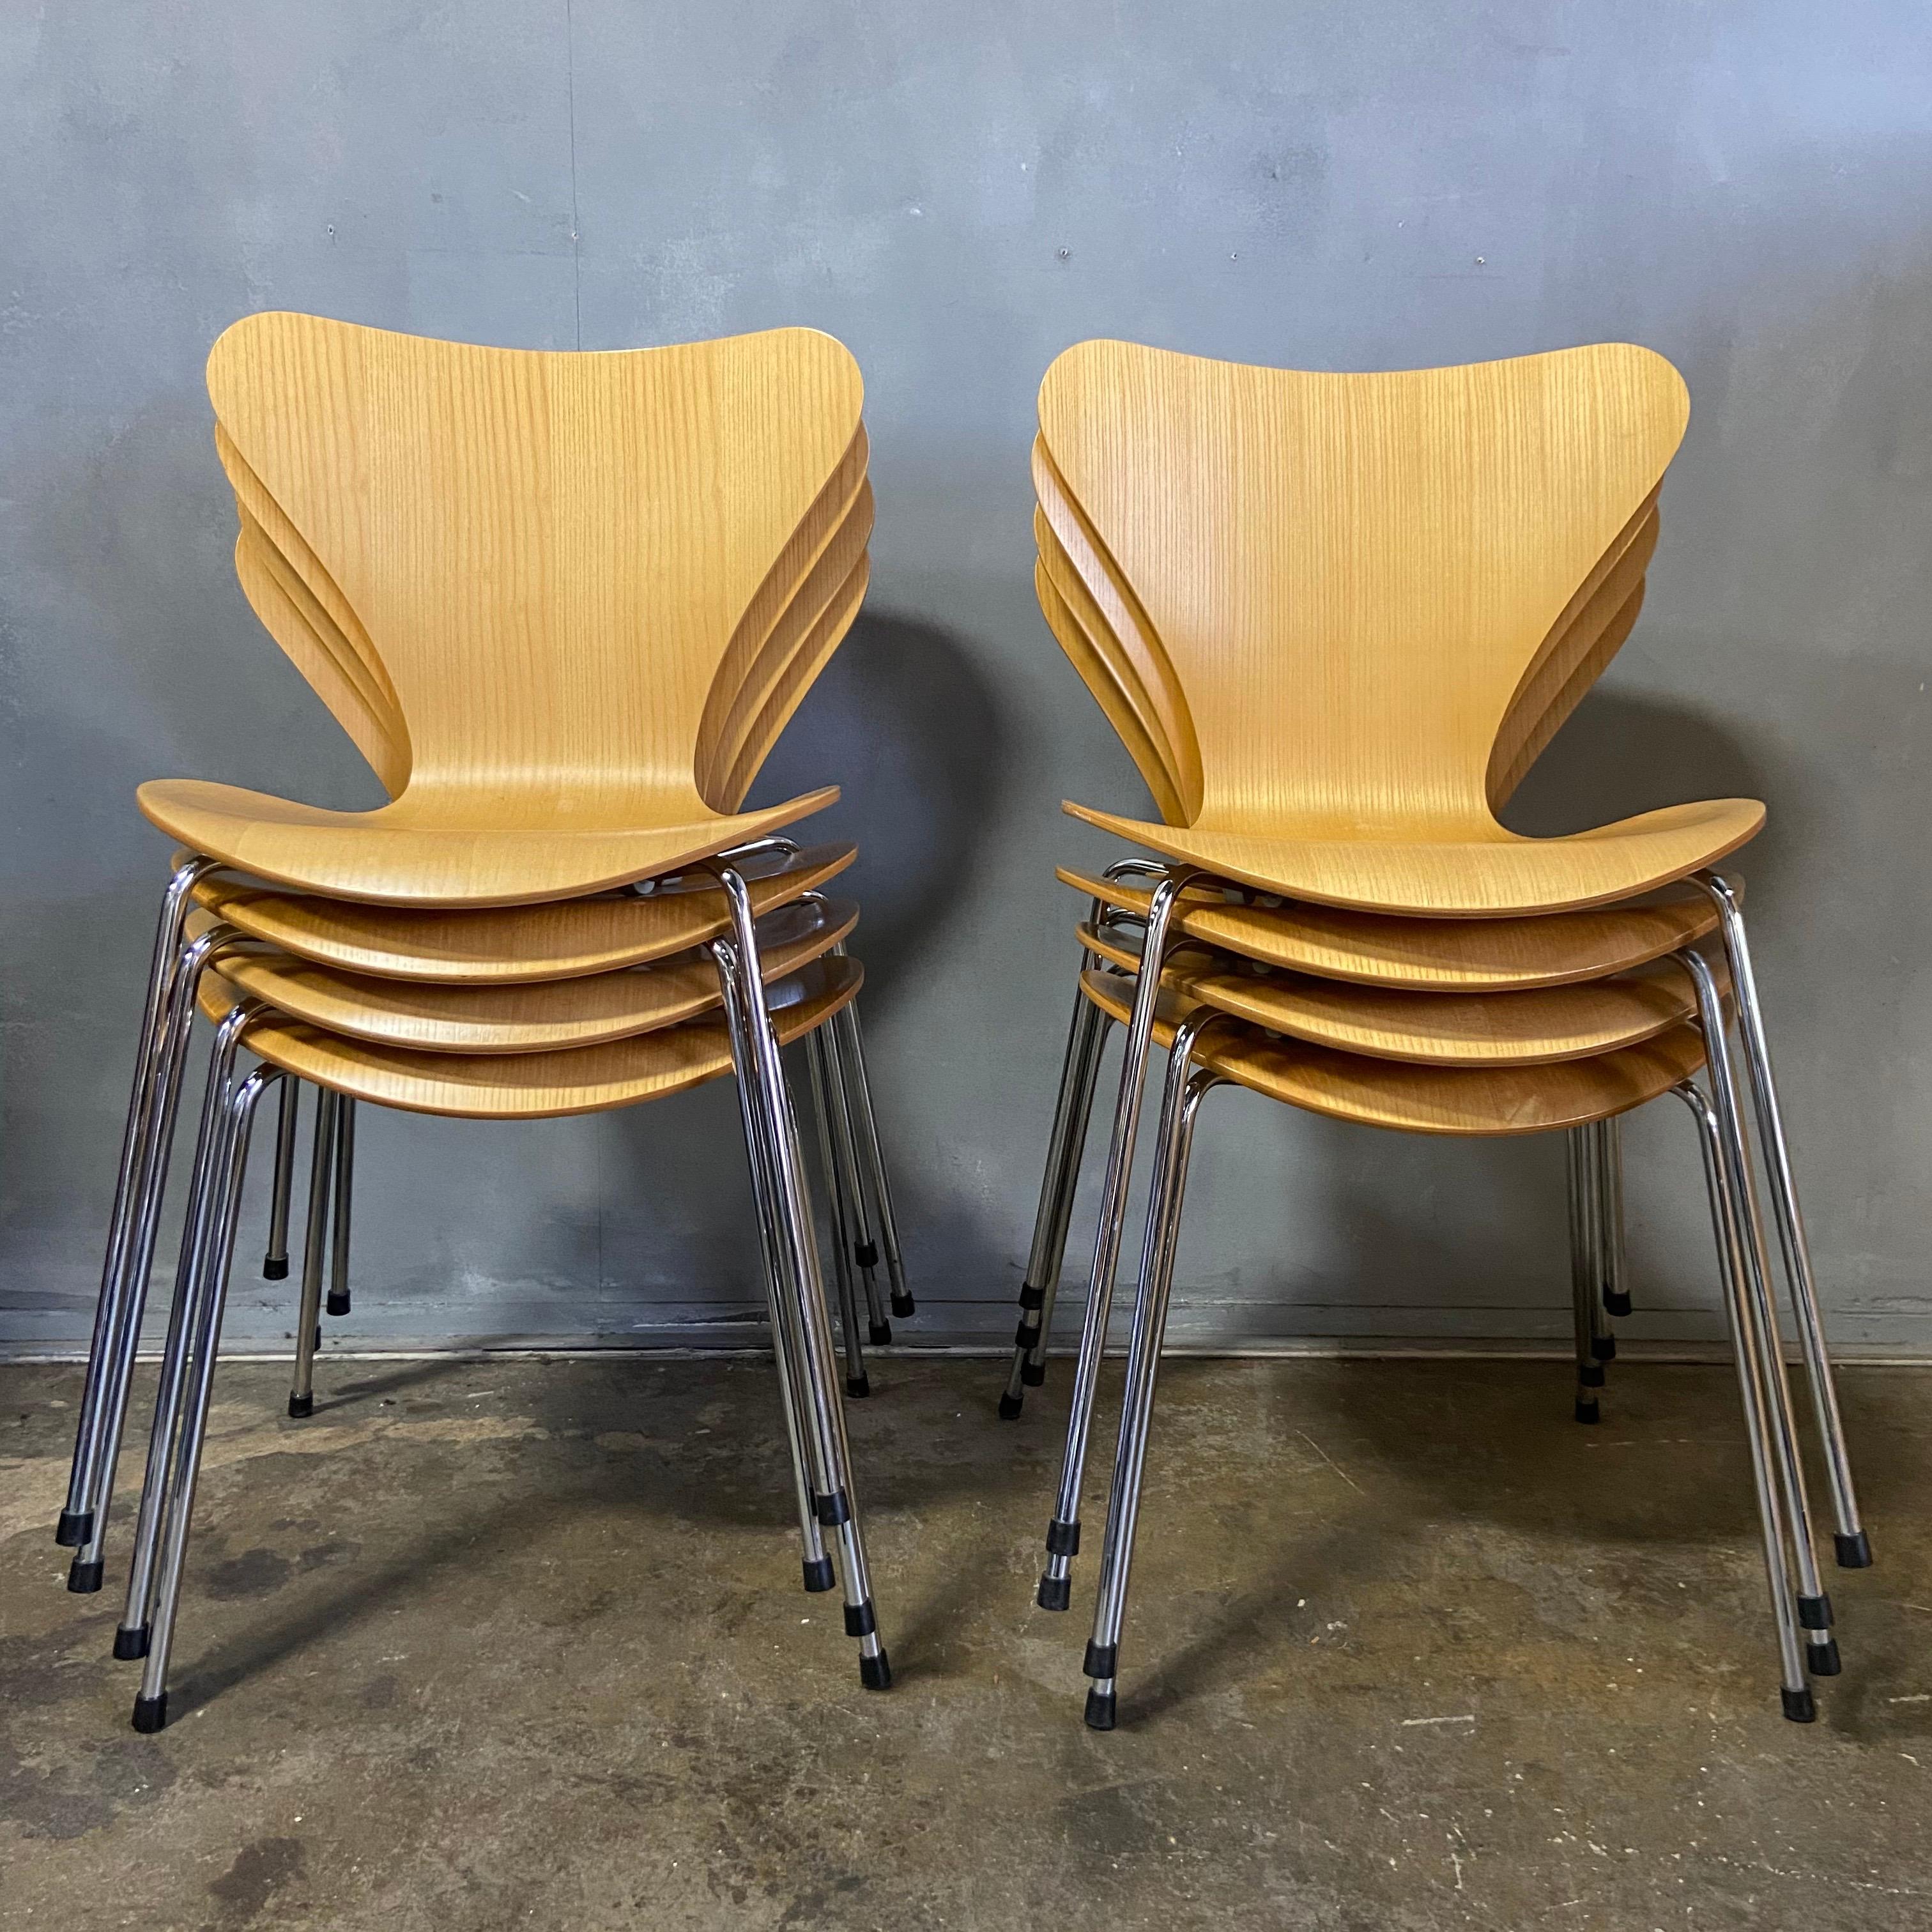 Bis zu 24 Stühle der Serie 7 von Arne Jacobsen für Fritz Hansen. Dieses ikonische Design ist einer der erfolgreichsten Stühle, die je aus dieser Ära produziert wurden. Unglaublich bequem und vielseitig.

   